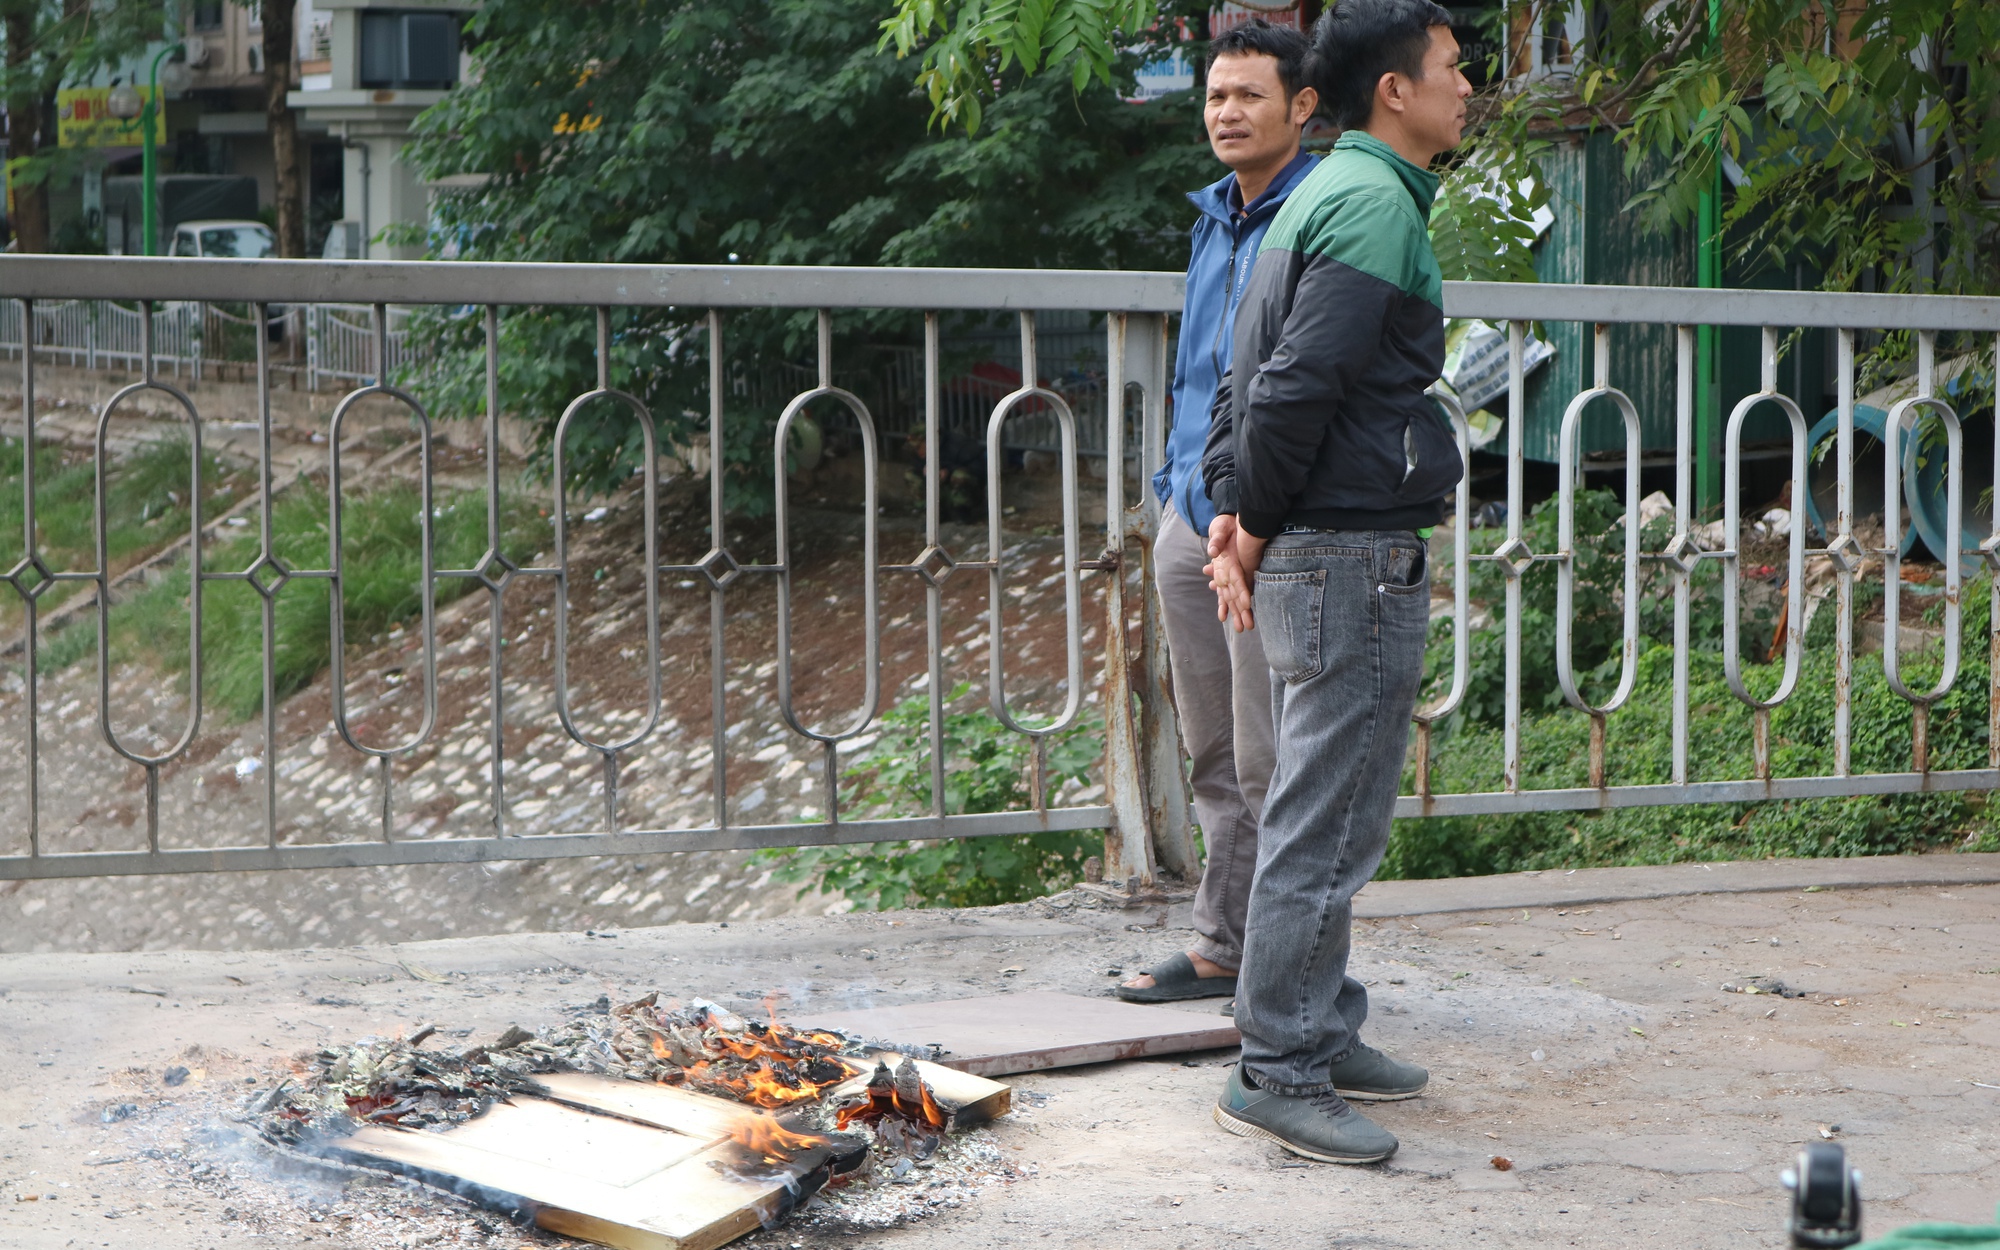 Lạnh tê tái, lao động tự do ở Hà Nội đốt lửa sưởi ấm giữa ban ngày